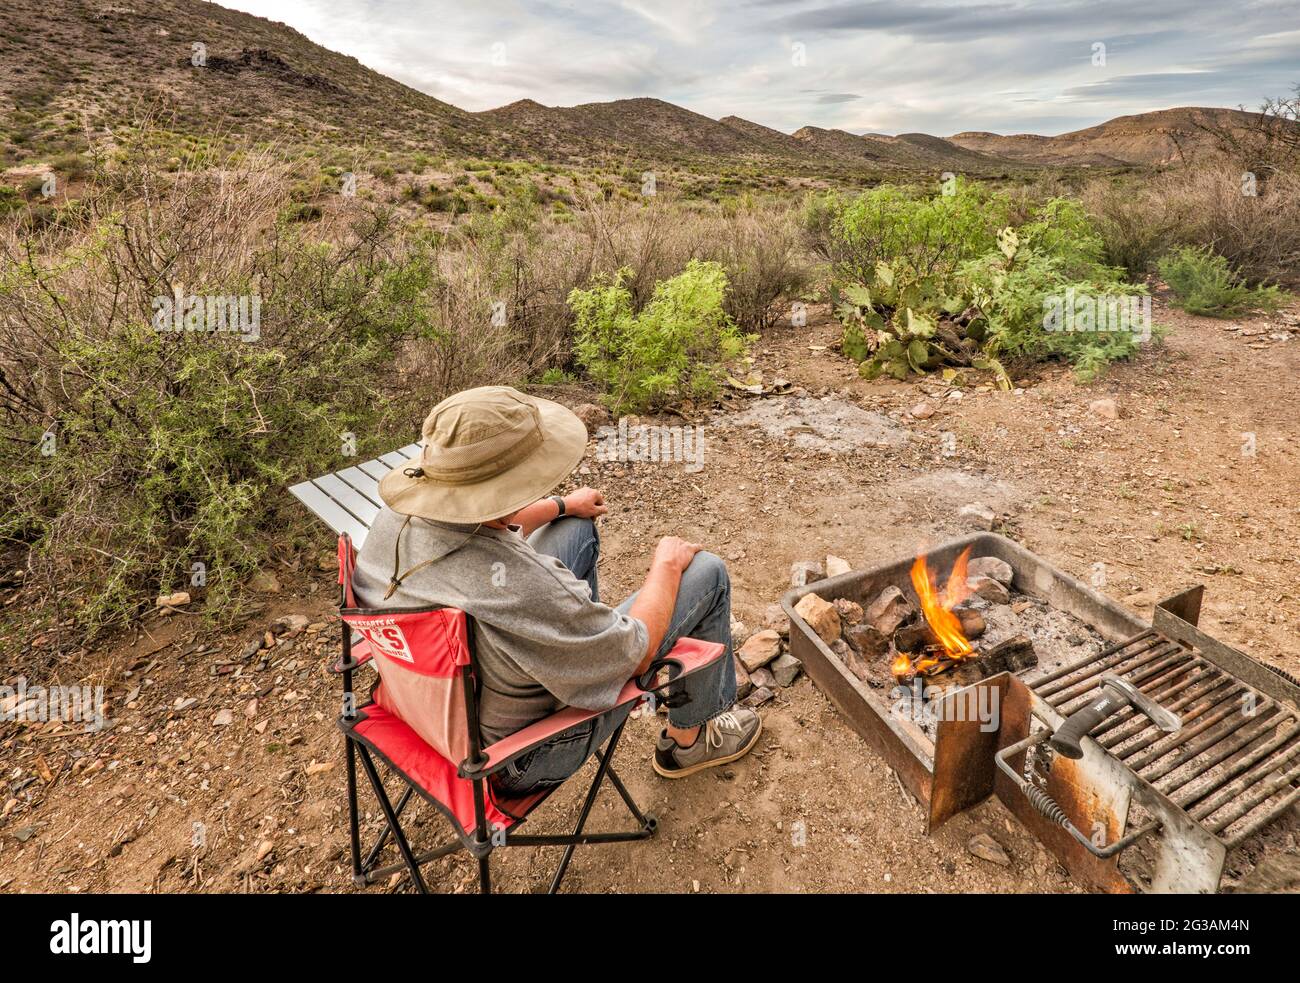 Campeur relaxant à Tres Papalotes, camping dans la région d'El Solitario, dôme volcanique effondré et érodé, parc national de Big Bend Ranch, Texas, États-Unis Banque D'Images